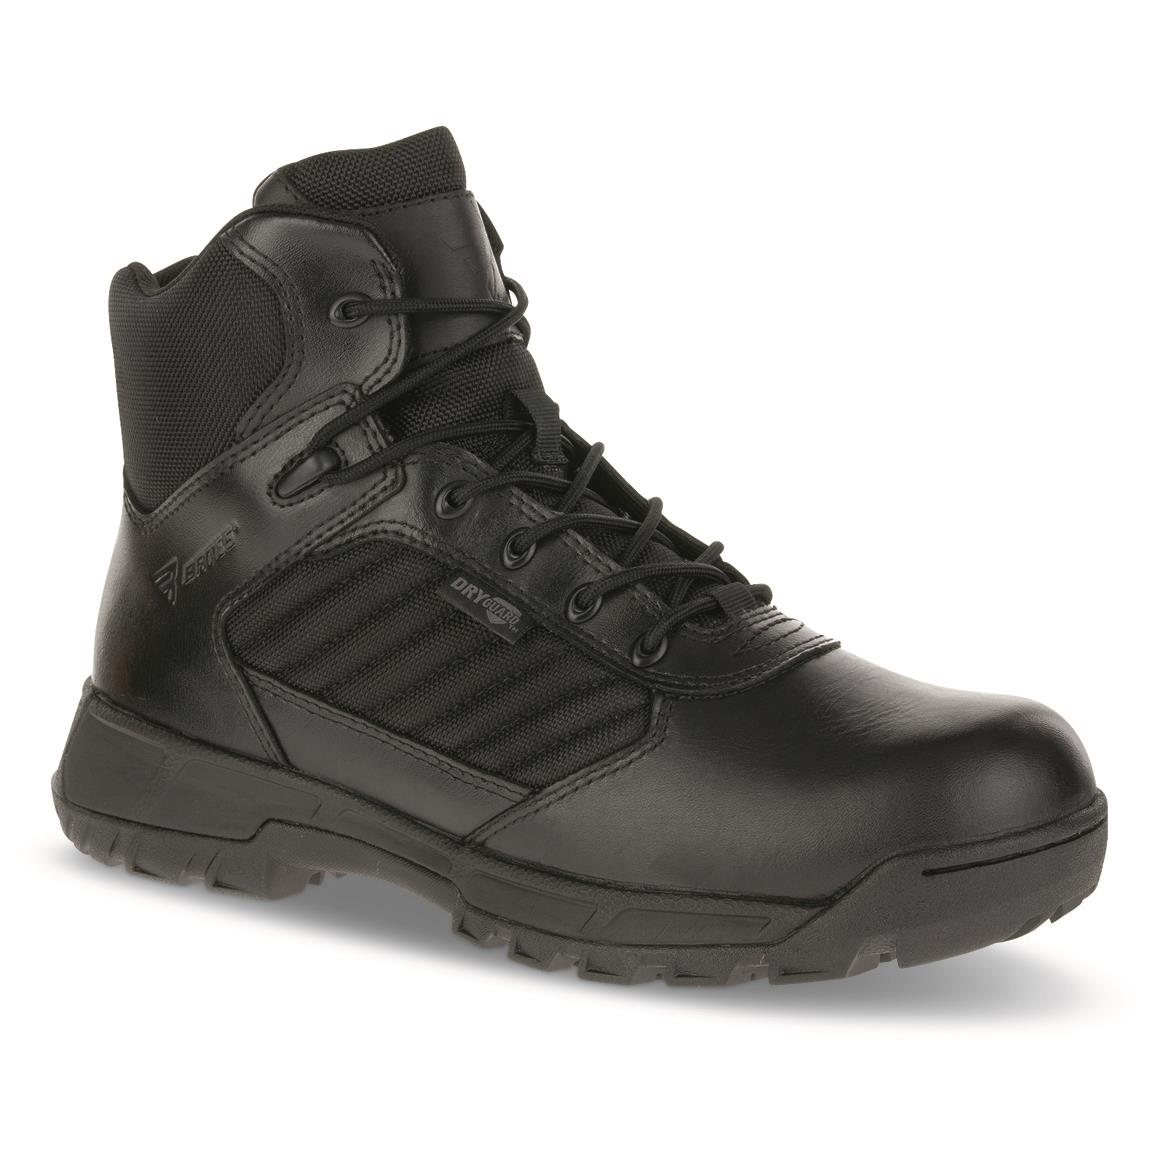 Bates Men's Tactical Sport 2 Mid Waterproof Tactical Boots, Black